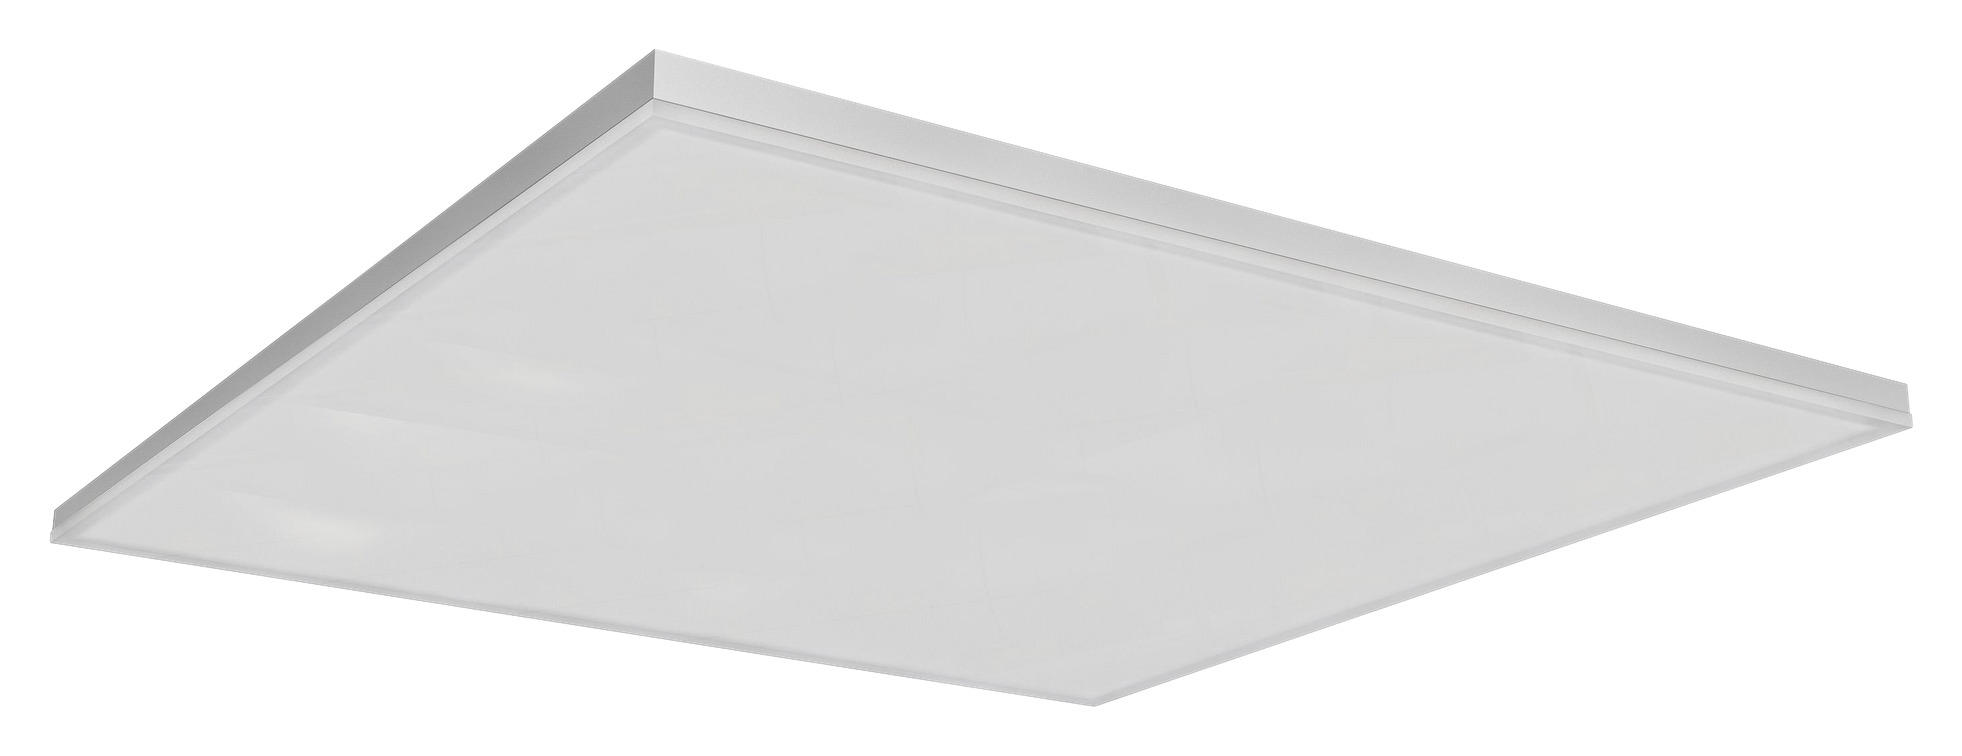 LED-PANEEL Smart+ Wifi Planon Frameless  - Weiß, Design, Metall (59,6/59,6/6,9cm) - Ledvance